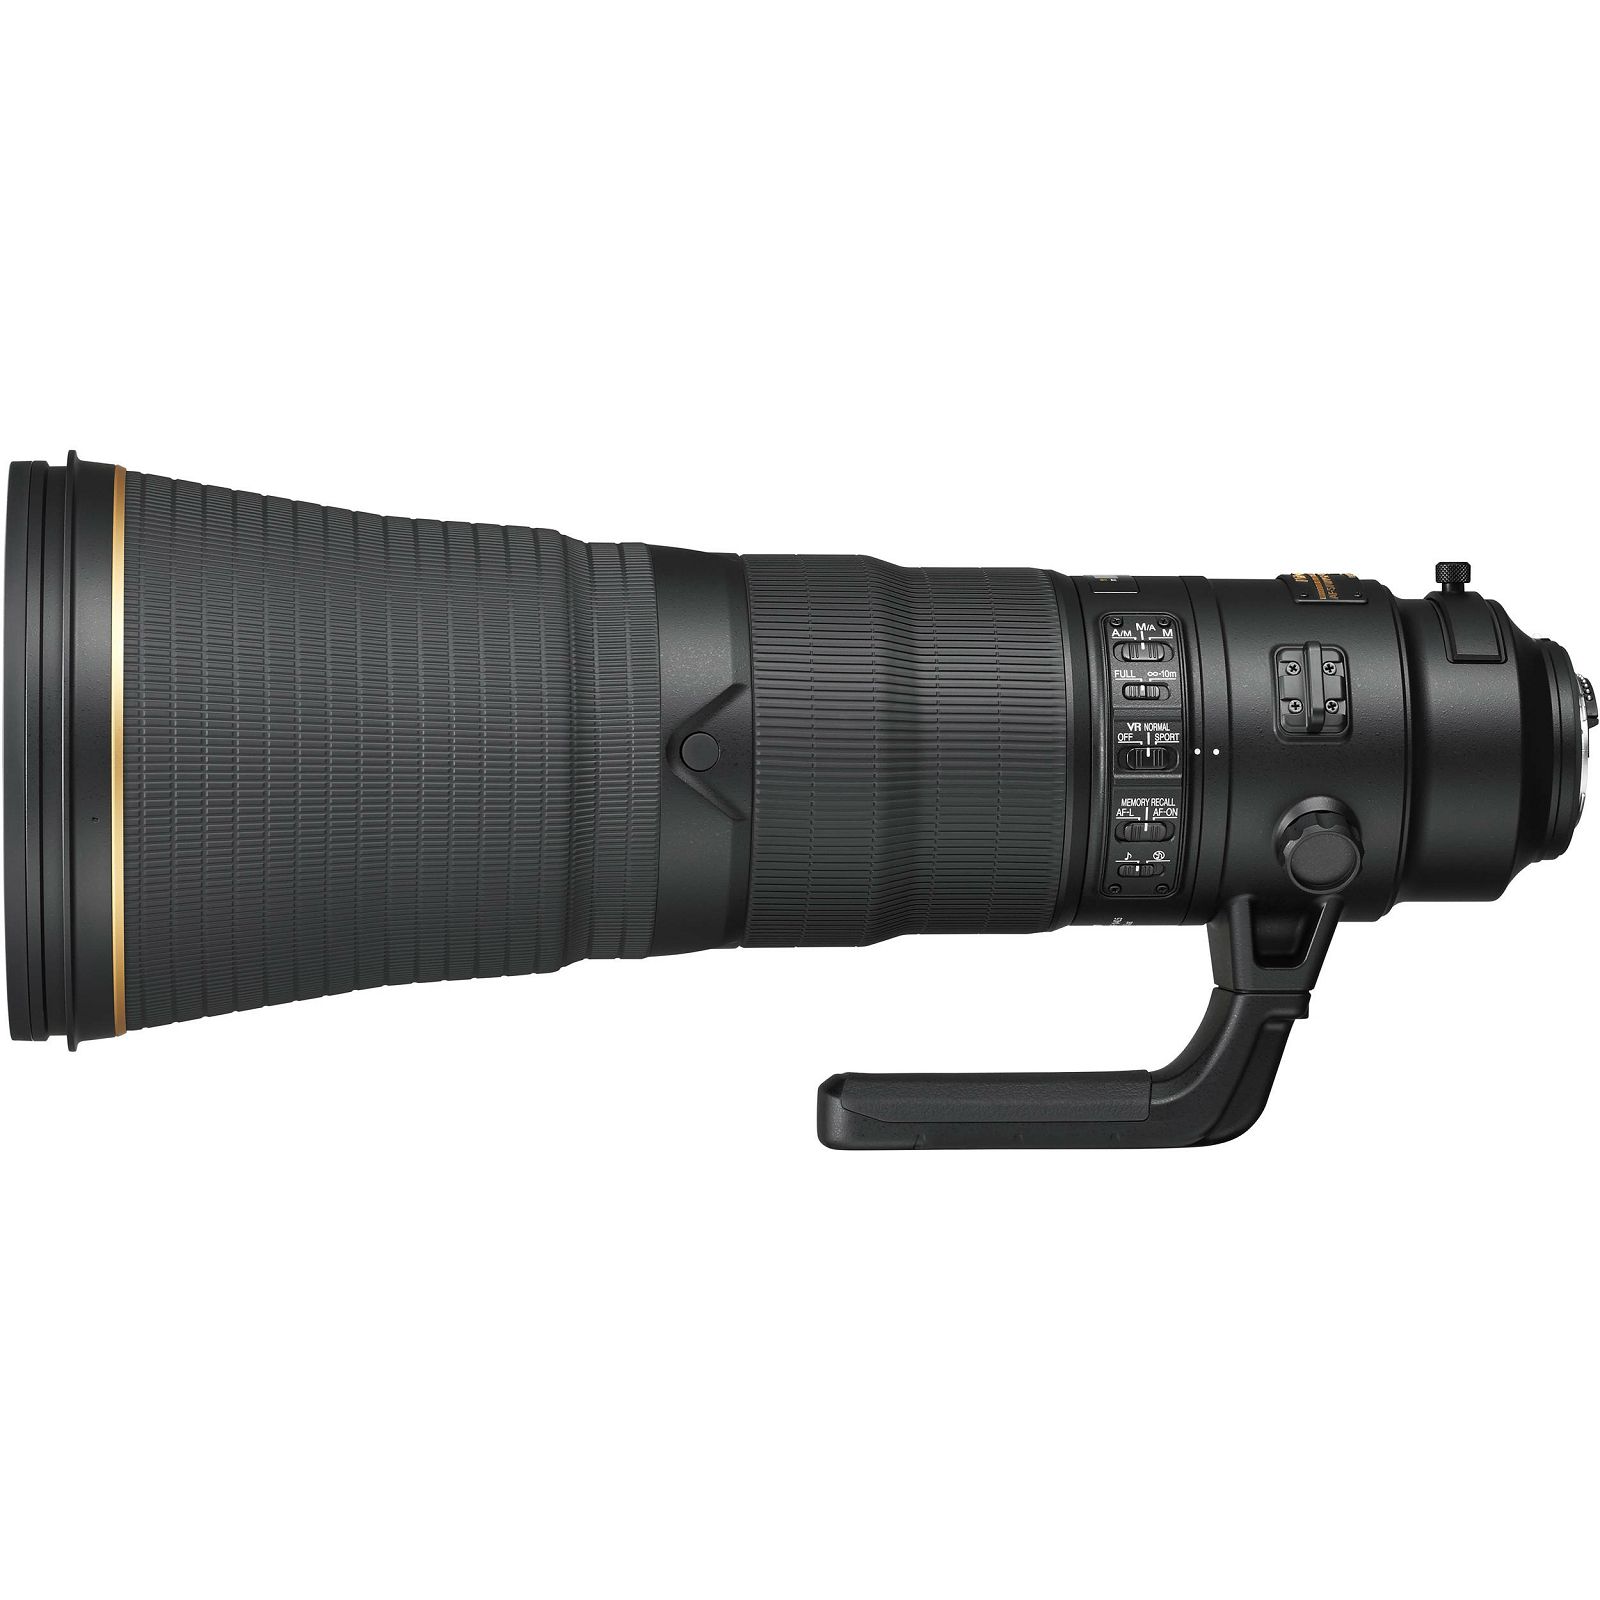 Nikon AF-S 600mm f/4E FL ED VR FX telefoto objektiv fiksne žarišne duljine Nikkor auto focus lens 600 f/4 E F4 F4E (JAA534DA)